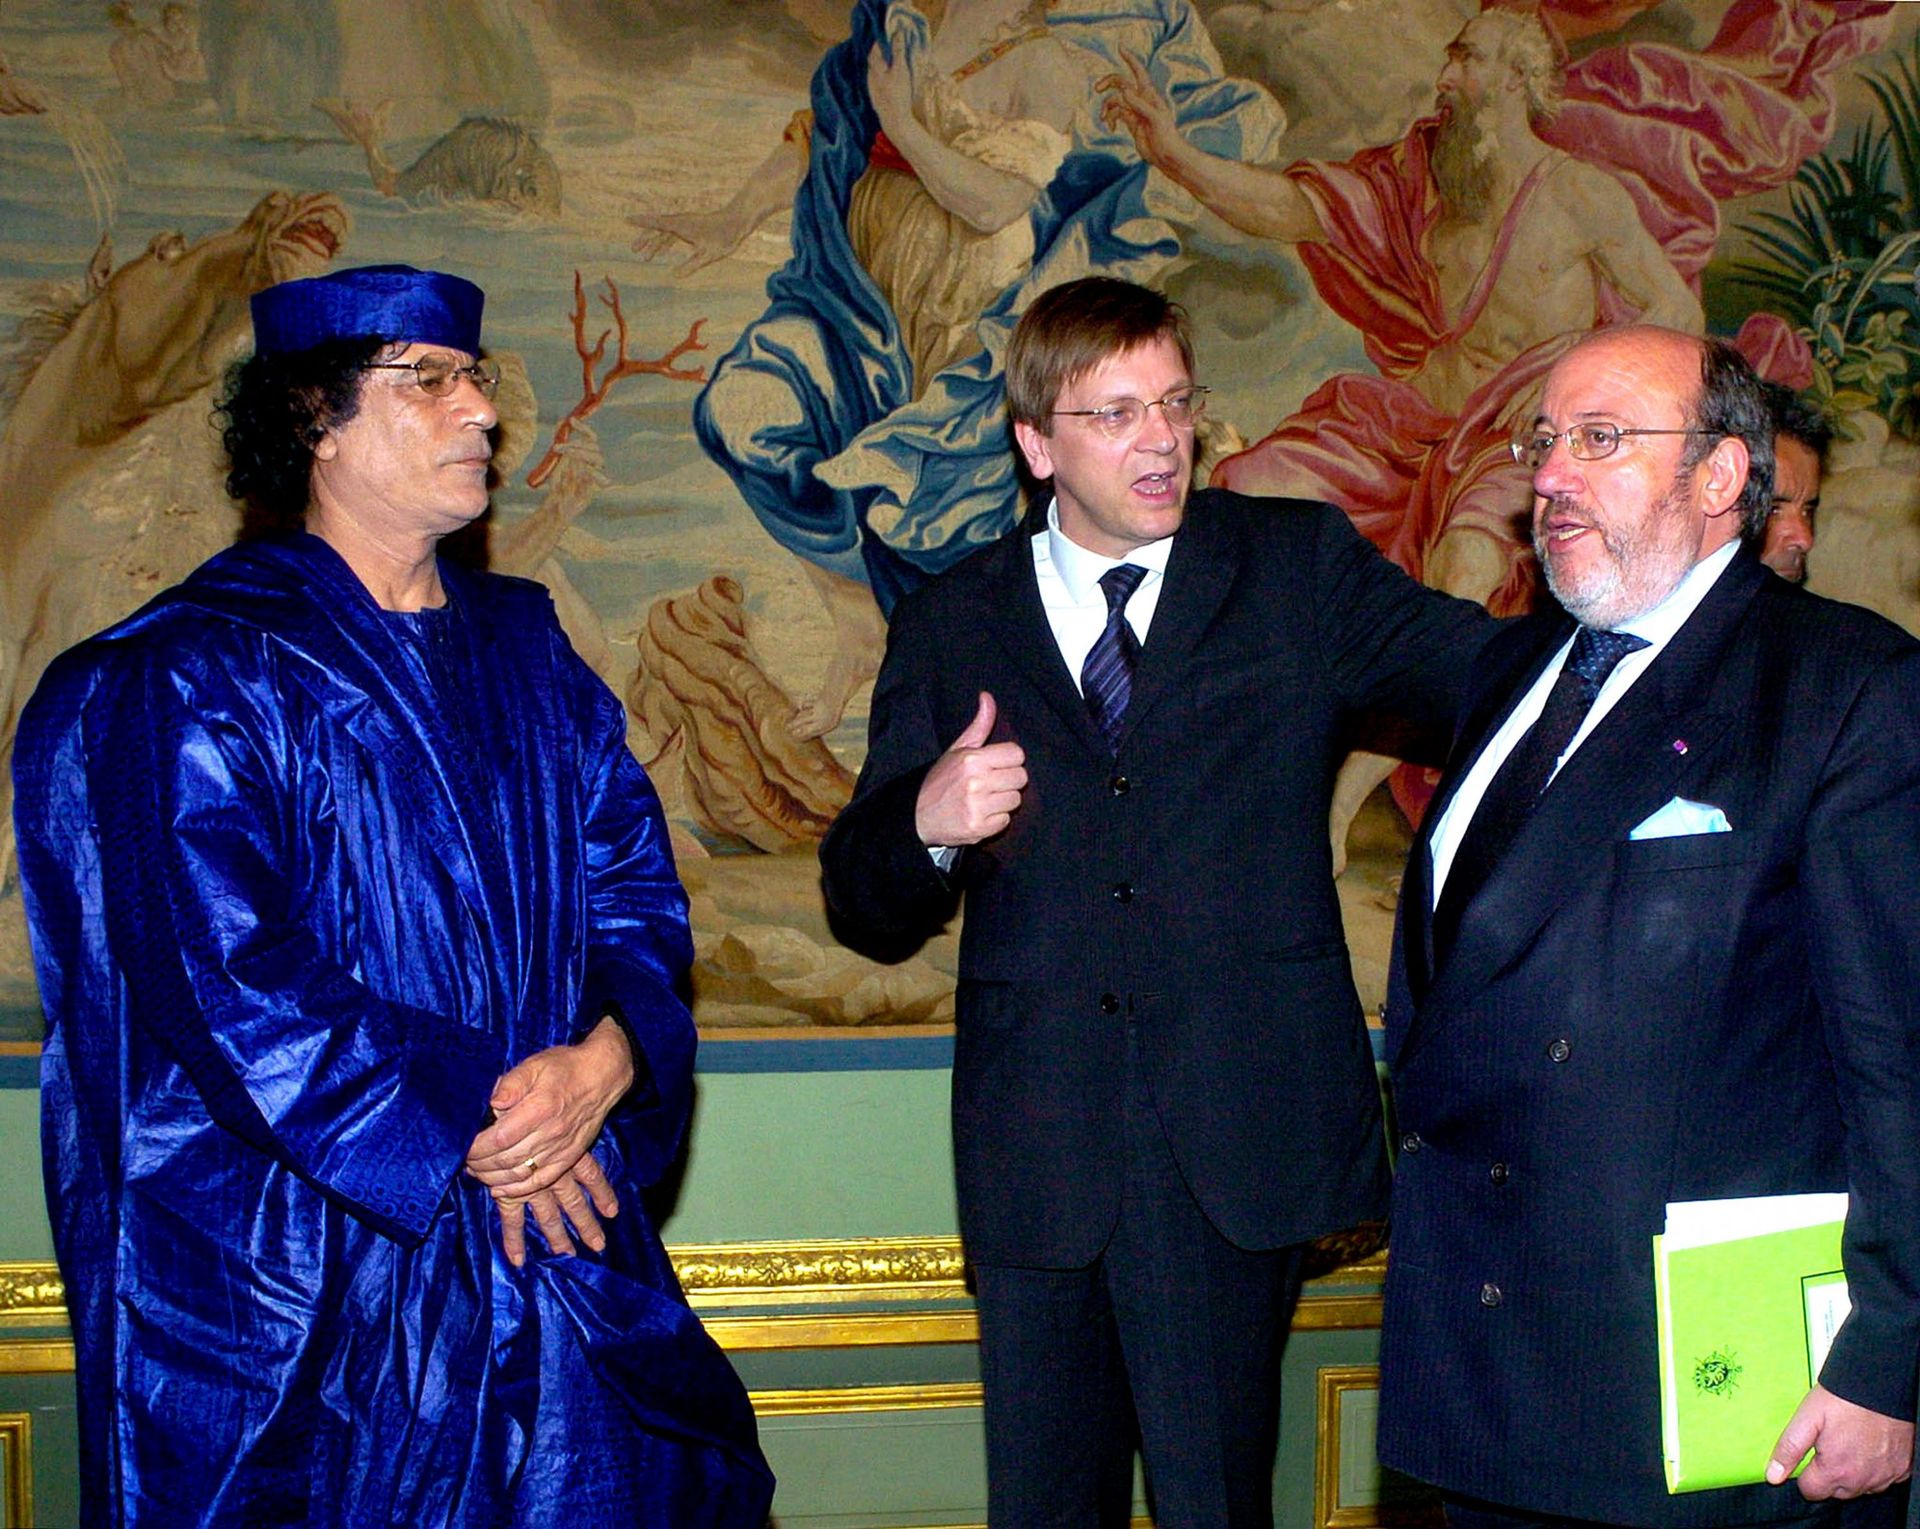 Le colonel Kadhafi rencontre Guy Verhofstadt et Louis Michel au Palis d'Egmont en 2004.